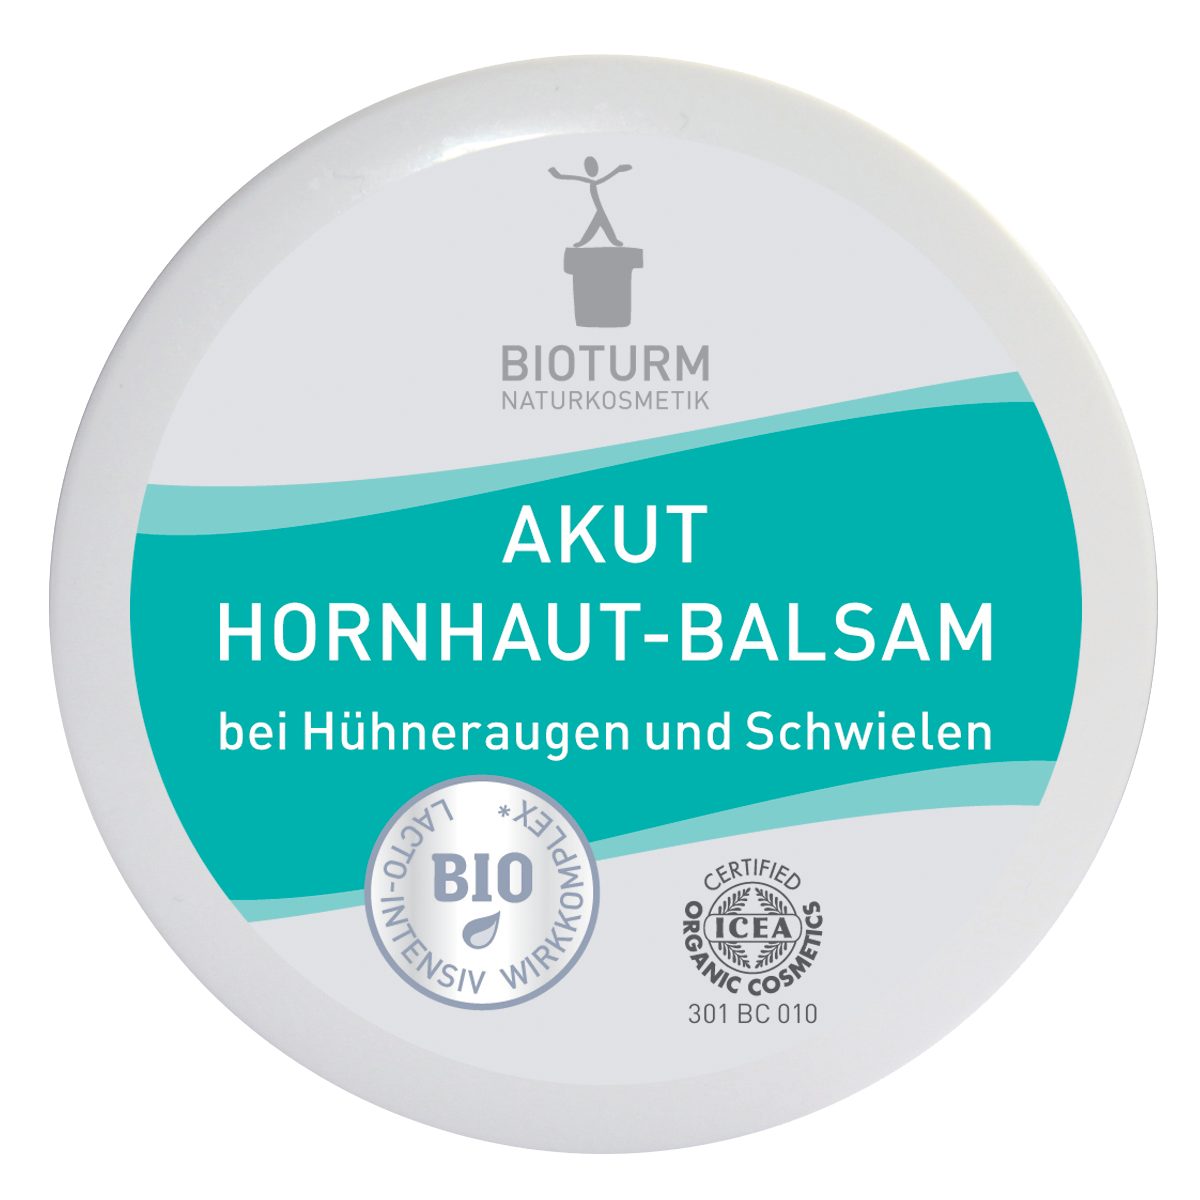 Bioturm Hornhautbalsam Bioturm Naturkosmetik Akut Hornhaut-Balsam 30 ml